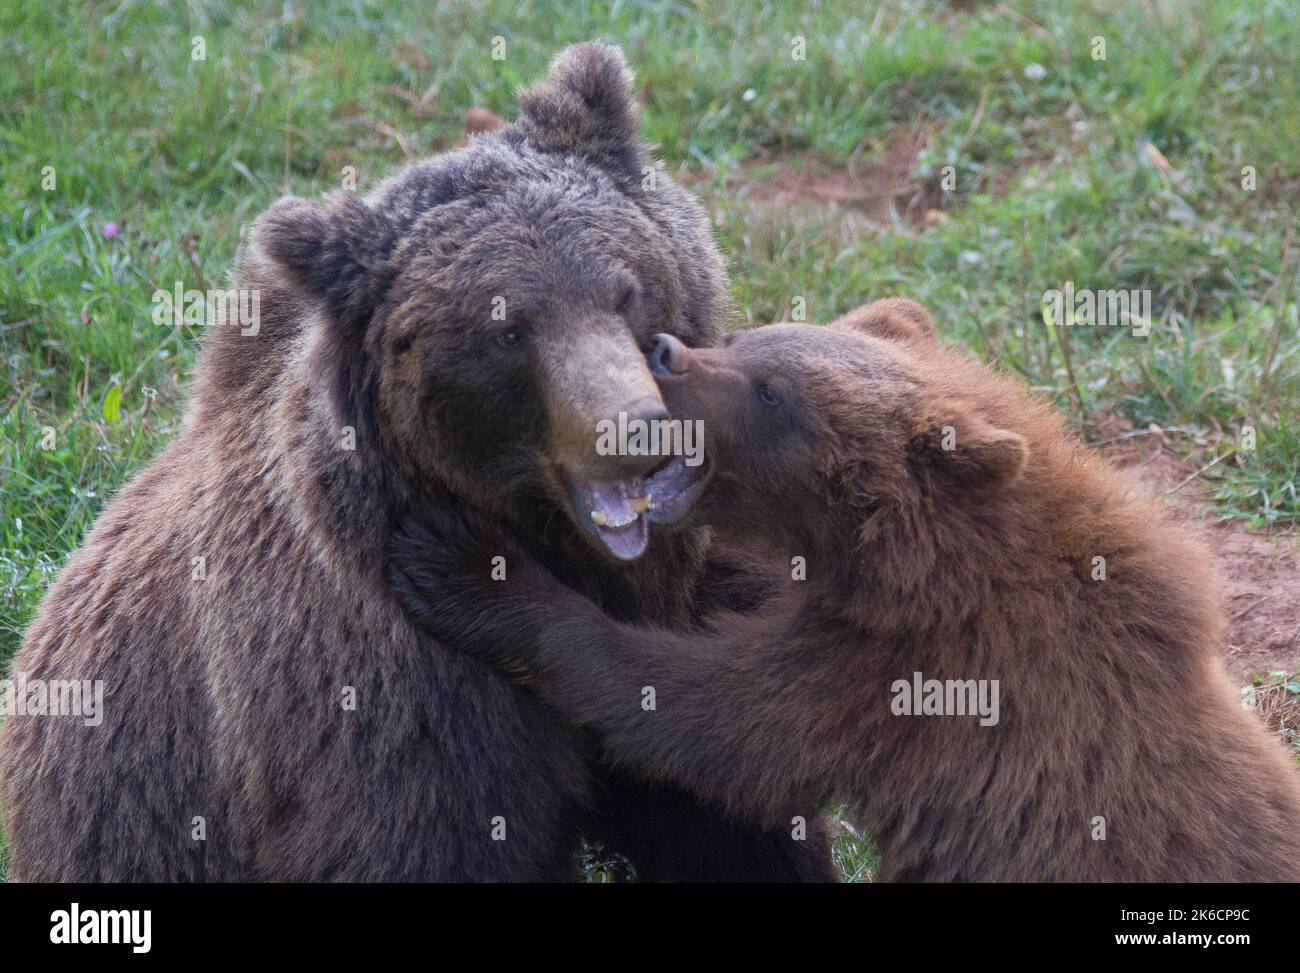 Braunbär Mutter und Kind spielen im Gras Stockfoto